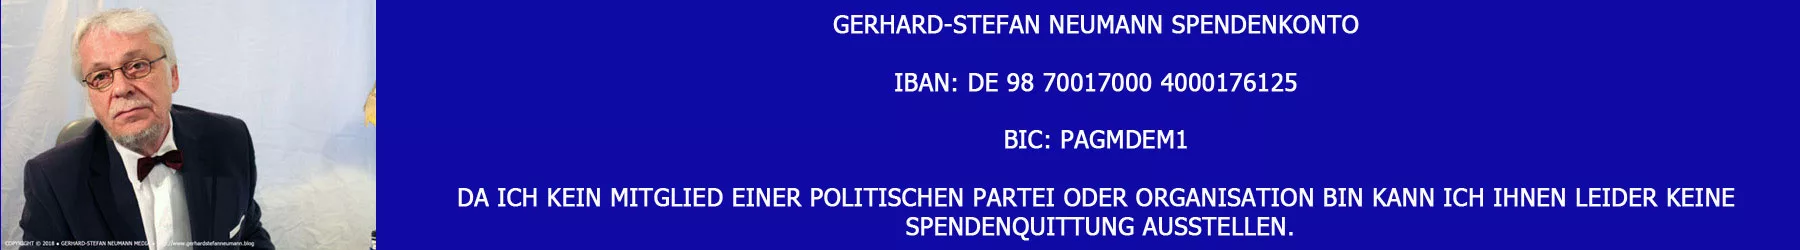 Bankverbindung ► Gerhard-Stefan Neumann ►